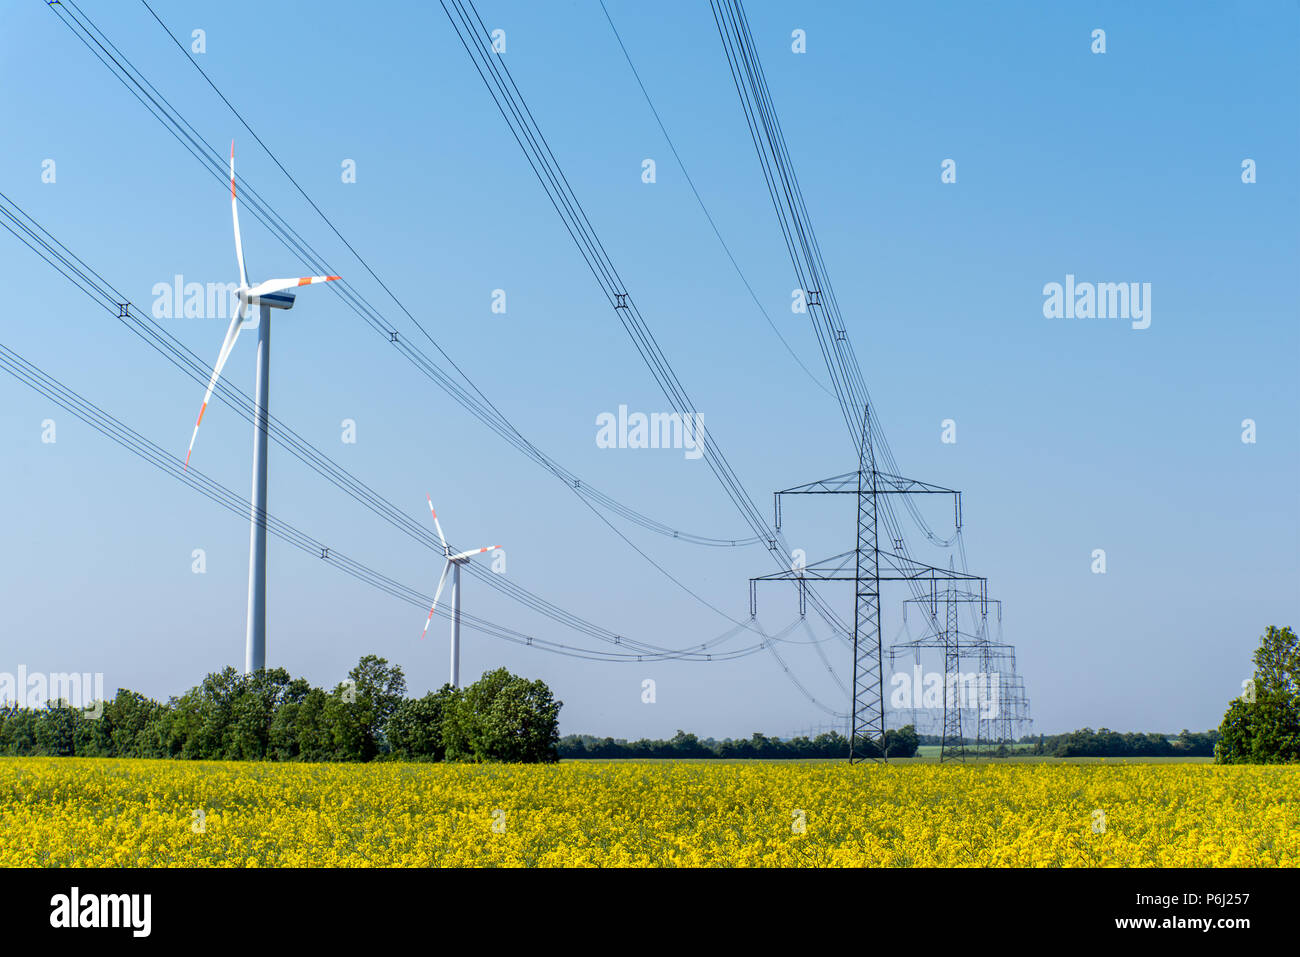 Les lignes d'alimentation et certaines éoliennes vu dans les régions rurales de l'Allemagne Banque D'Images